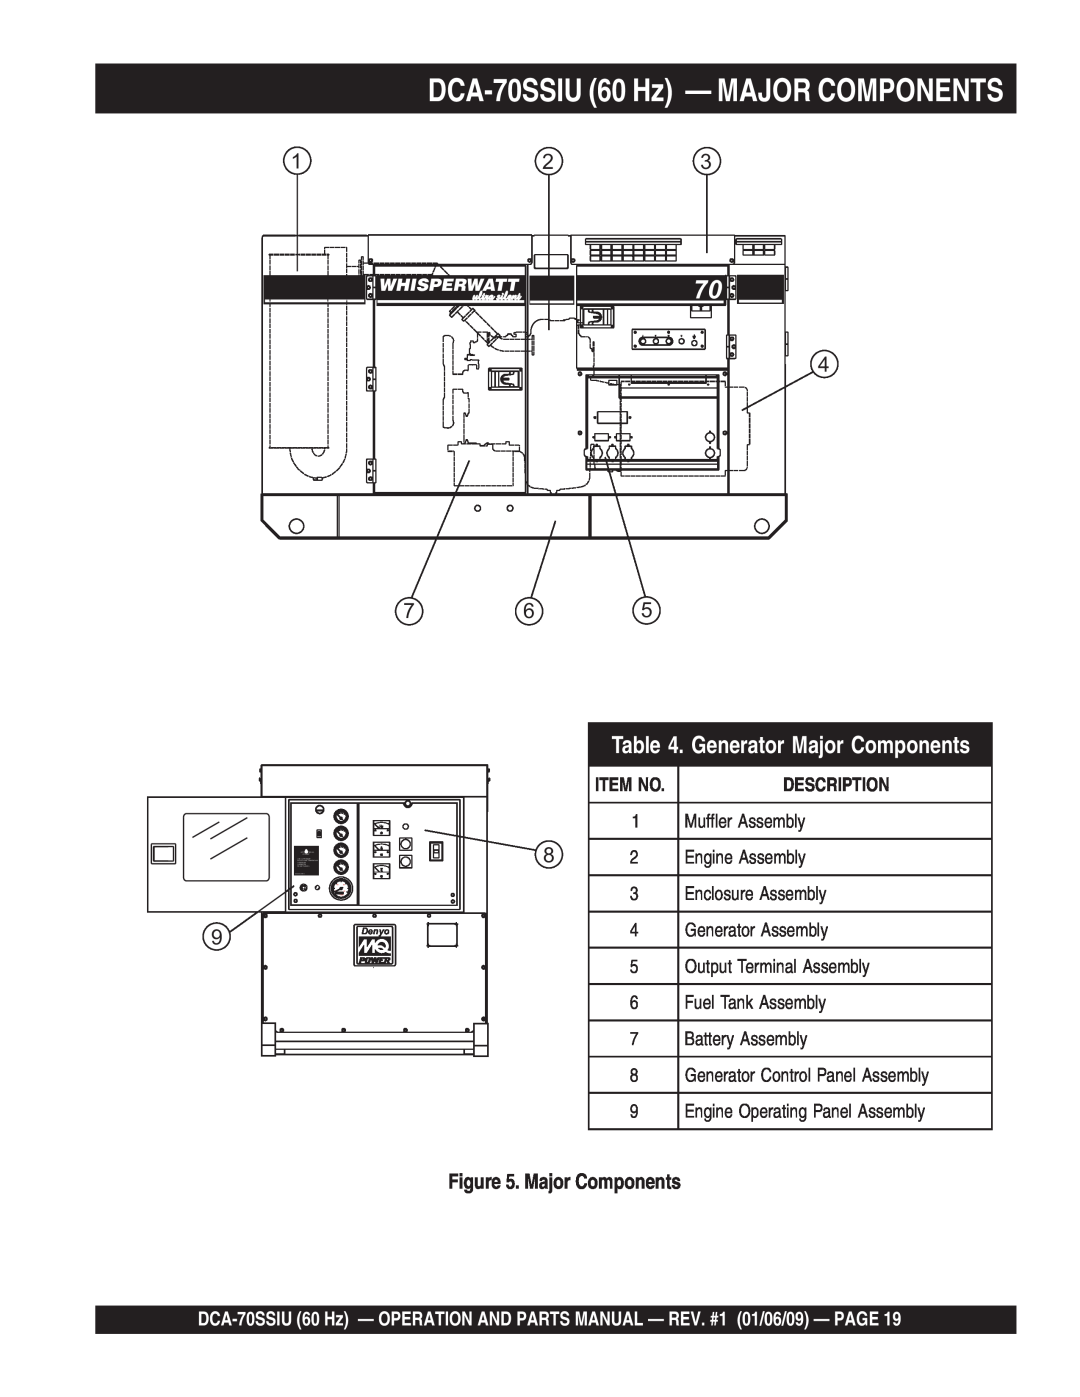 Multiquip M2870300504 operation manual DCA-70SSIU 60 Hz - MAJOR COMPONENTS, Generator Major Components, Item No 